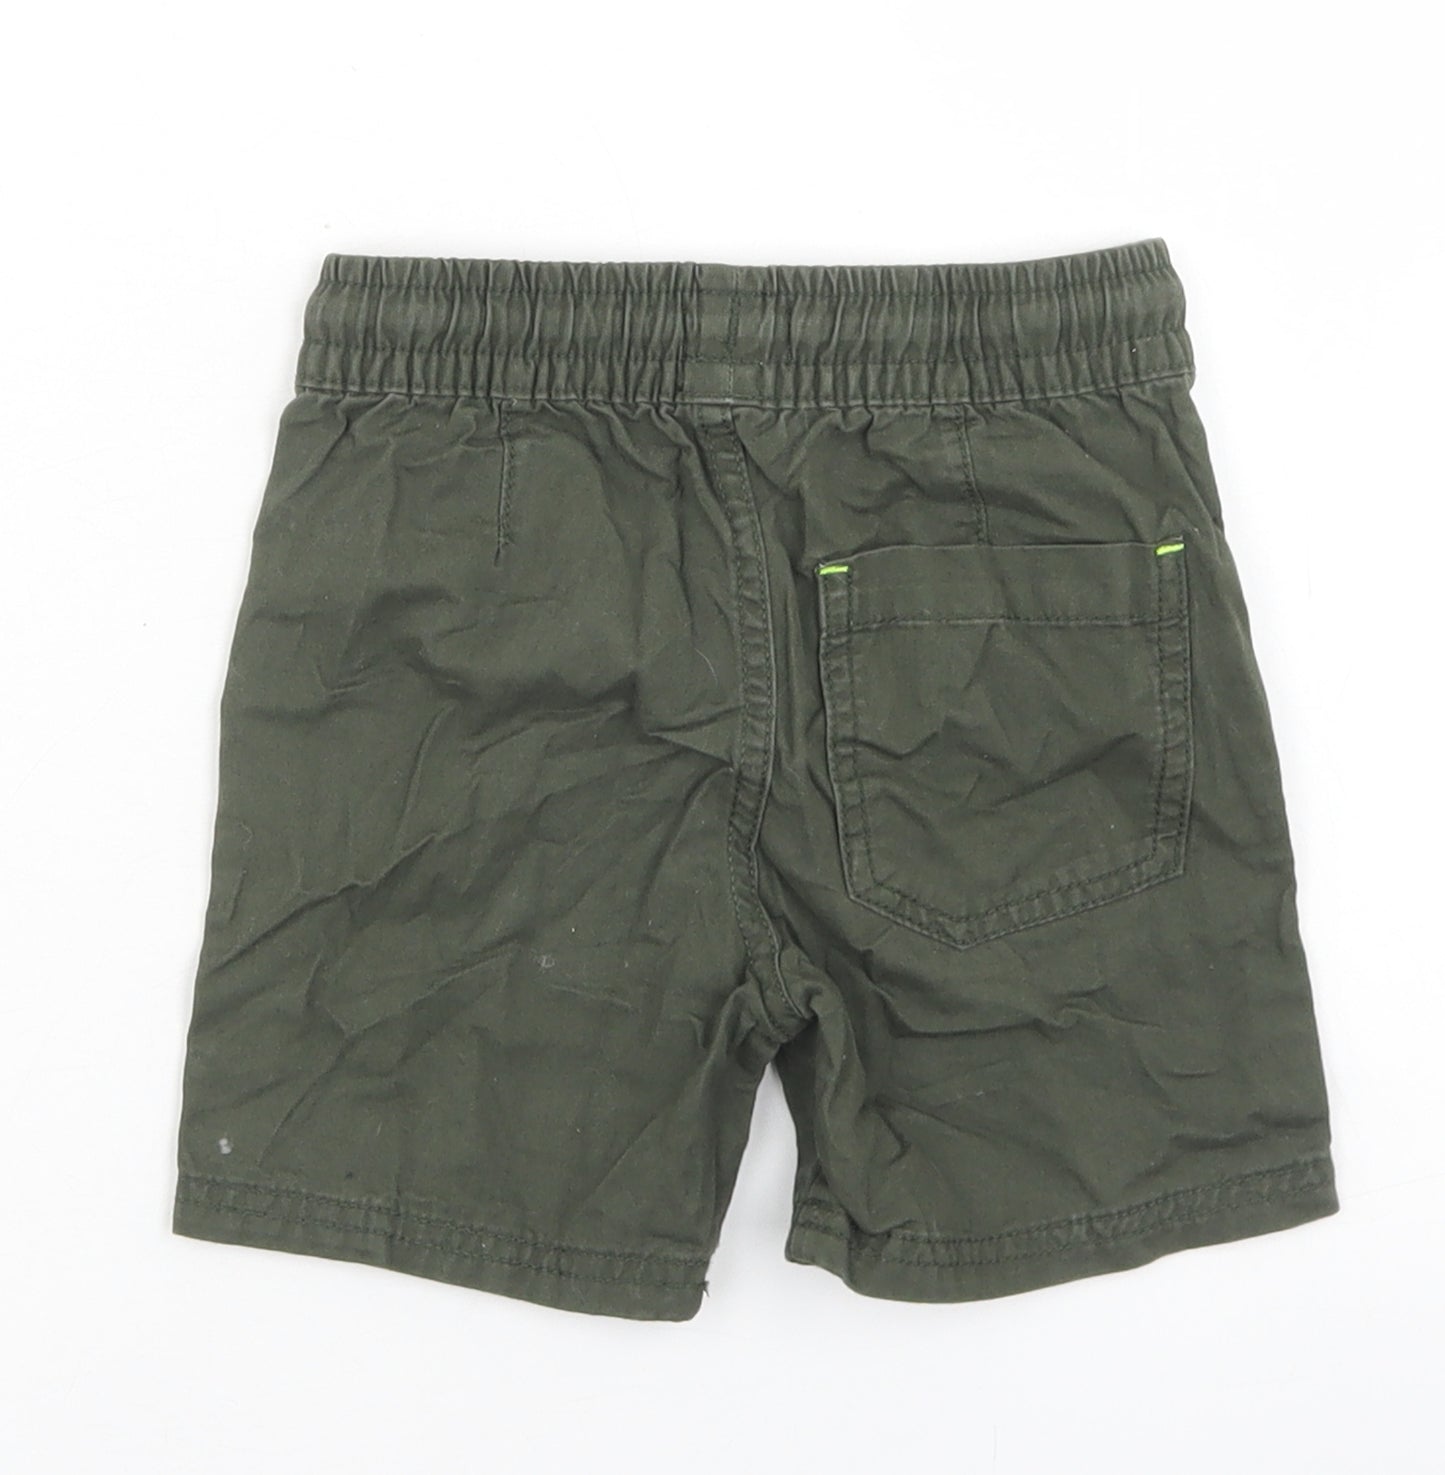 F&F Boys Green  Cotton Bermuda Shorts Size 2-3 Years  Regular Drawstring